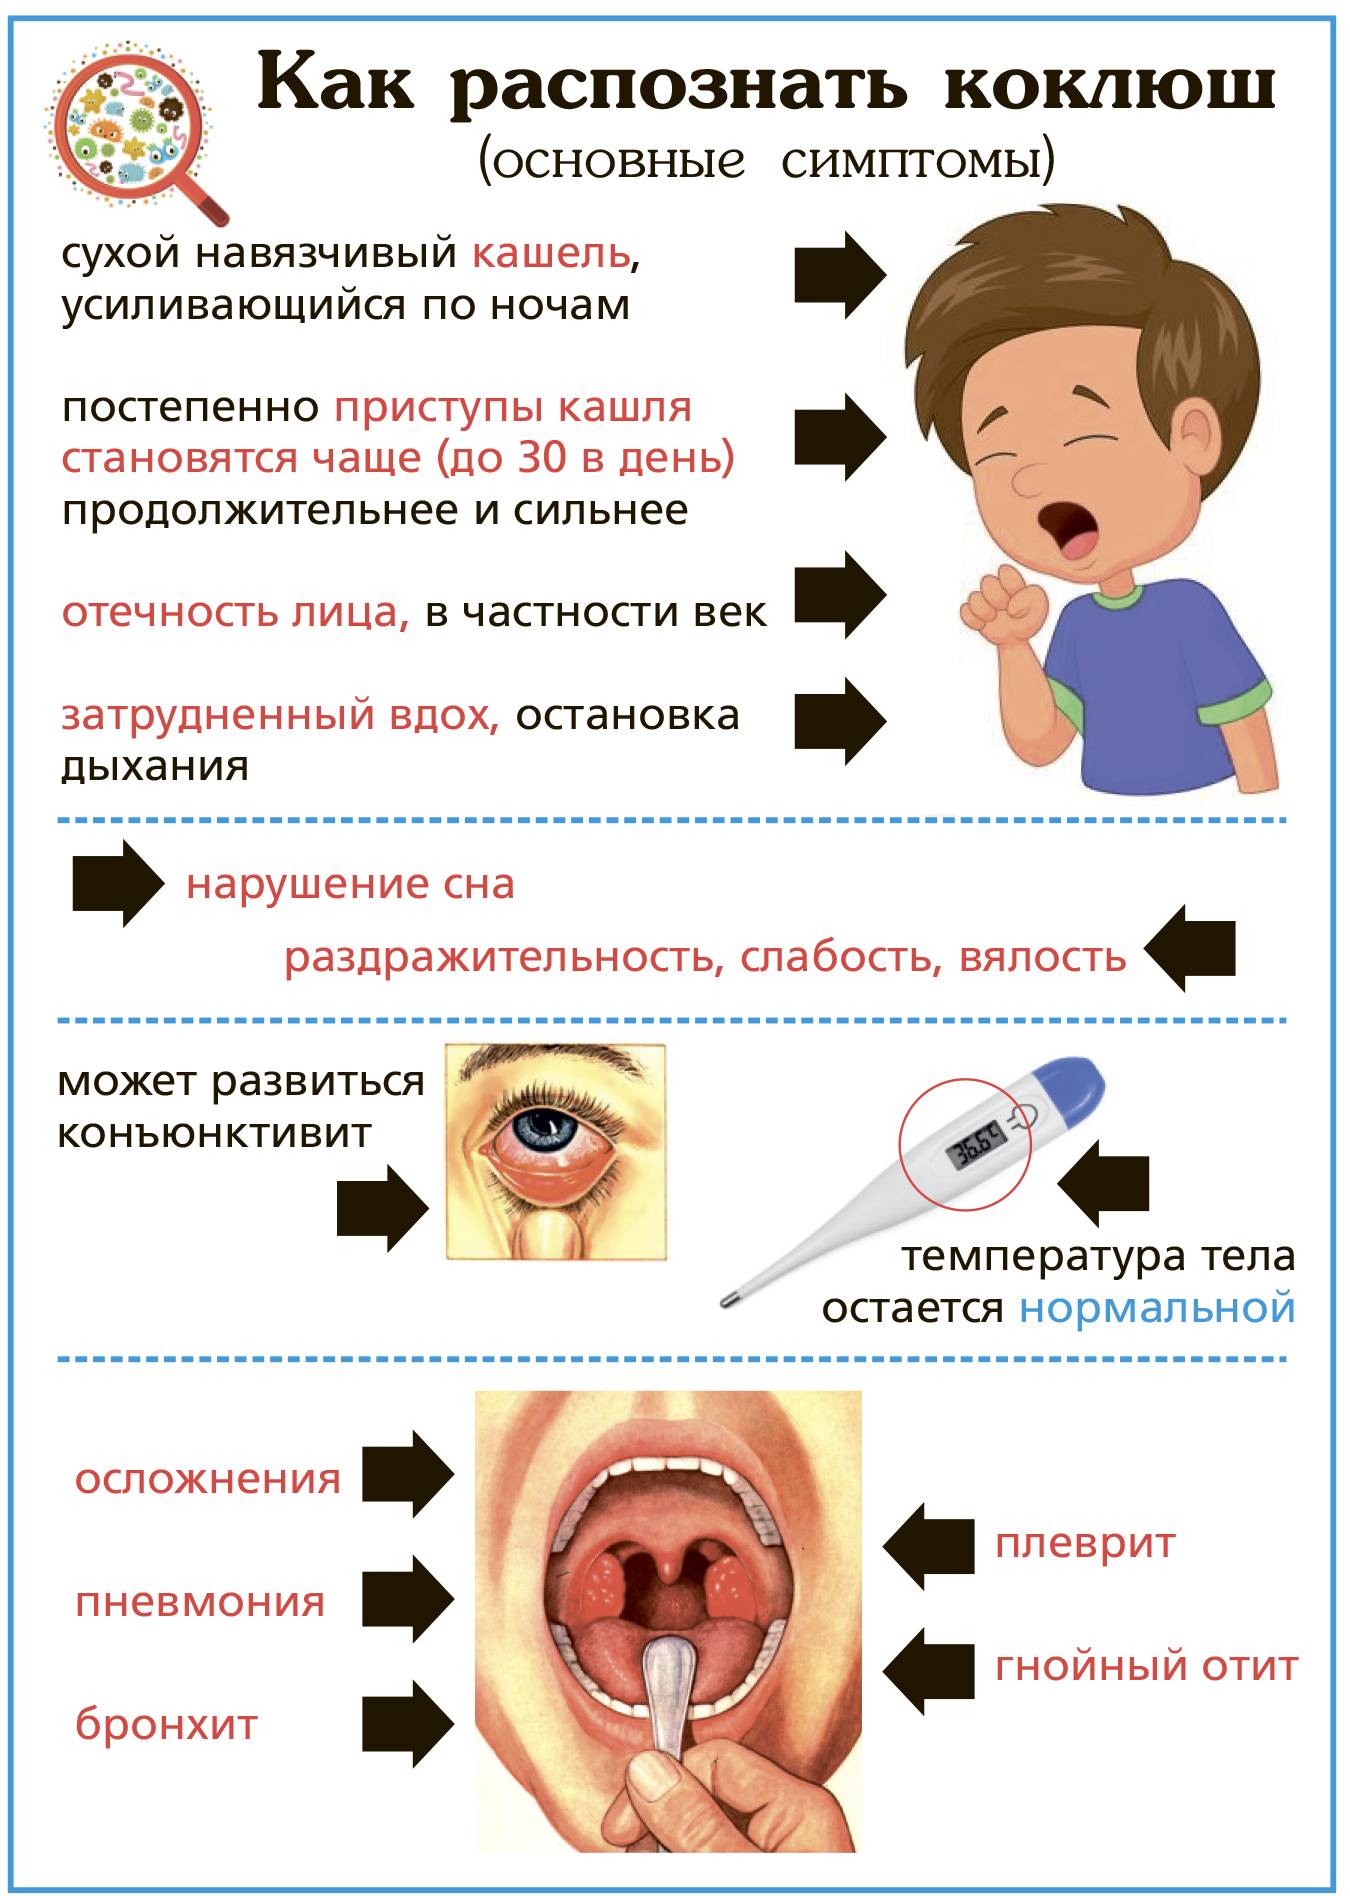 Аллергический кашель у ребенка – симптомы, лечение